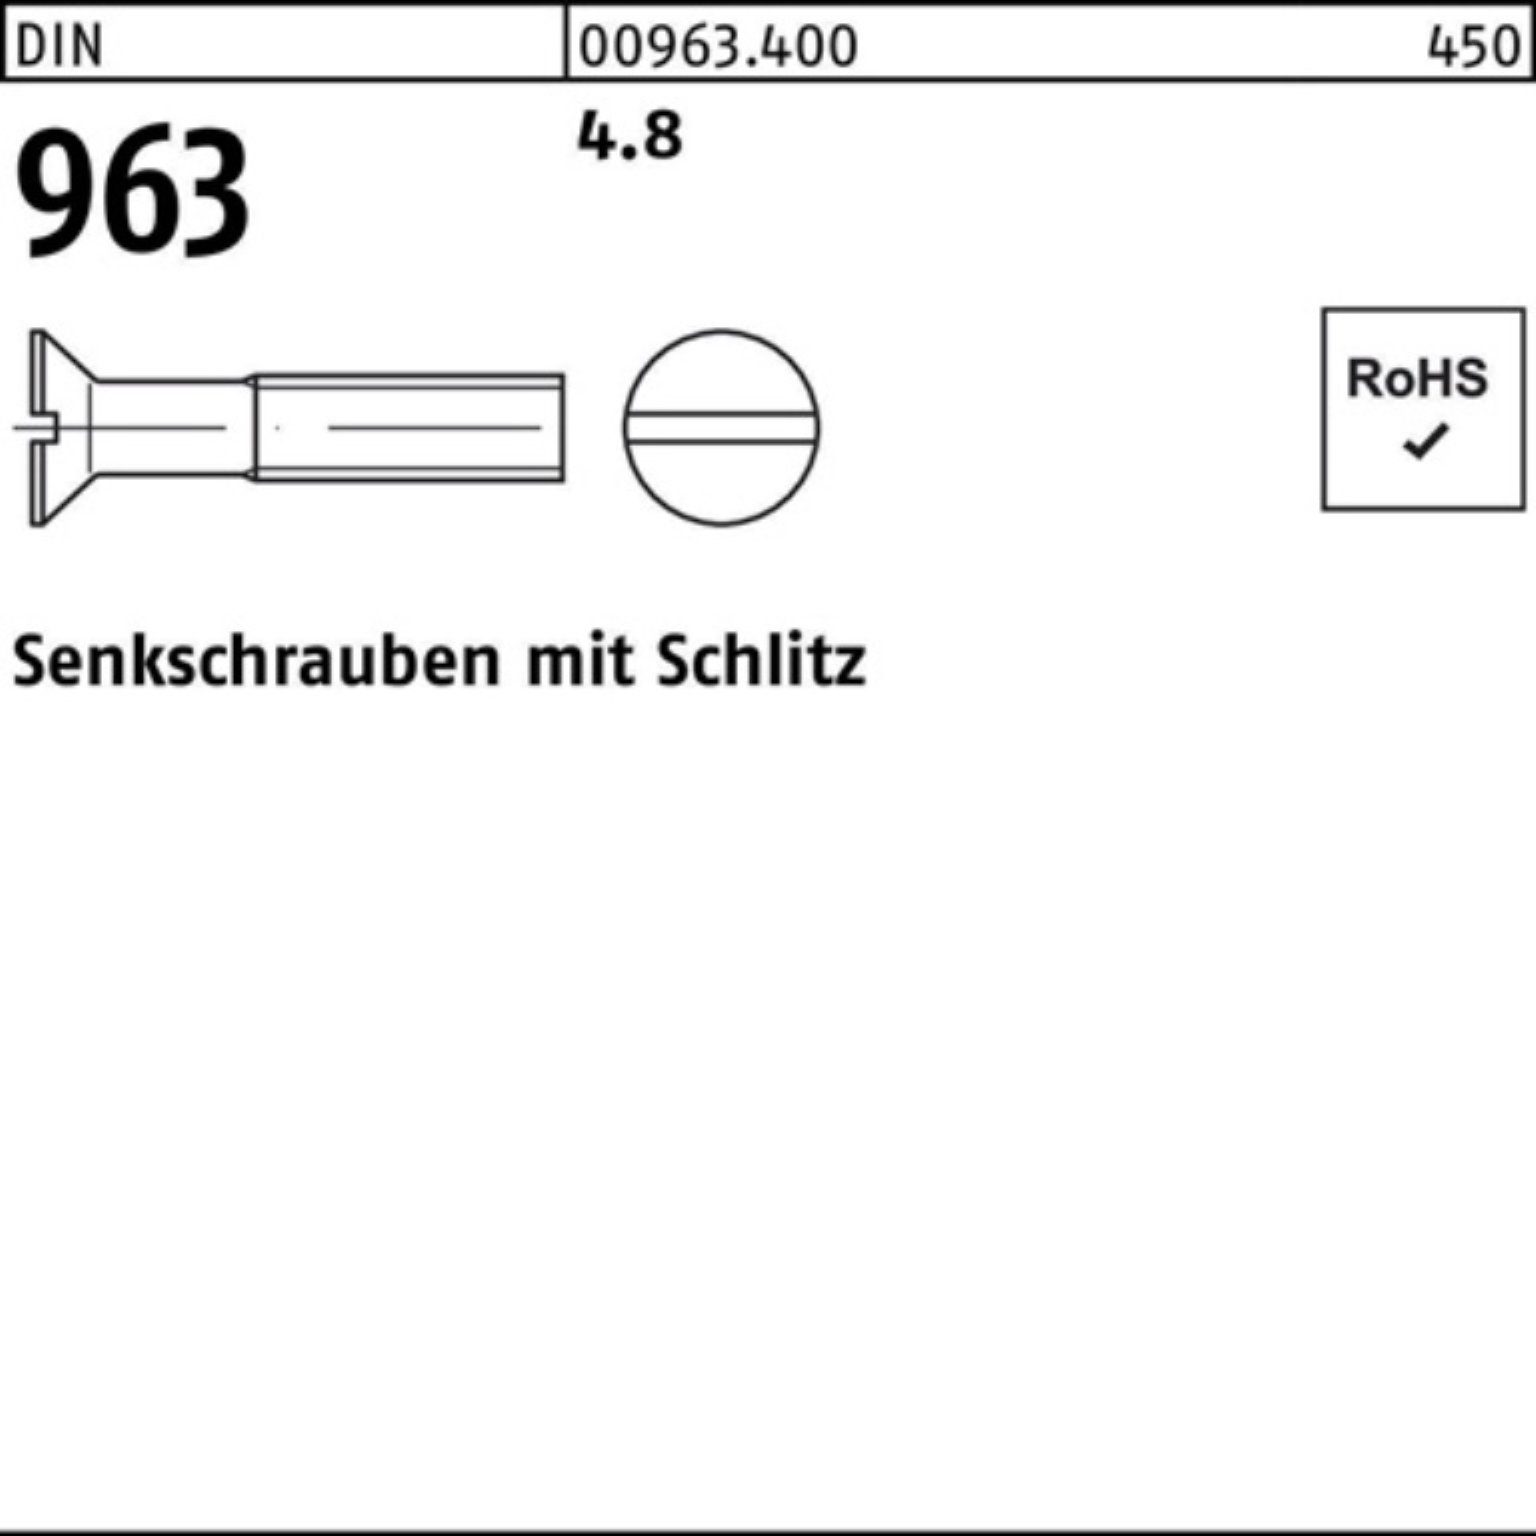 4.8 Pack 40 M10x Reyher Schlitz DIN 200er 200 Senkschraube DIN 963 963 Stück Senkschraube